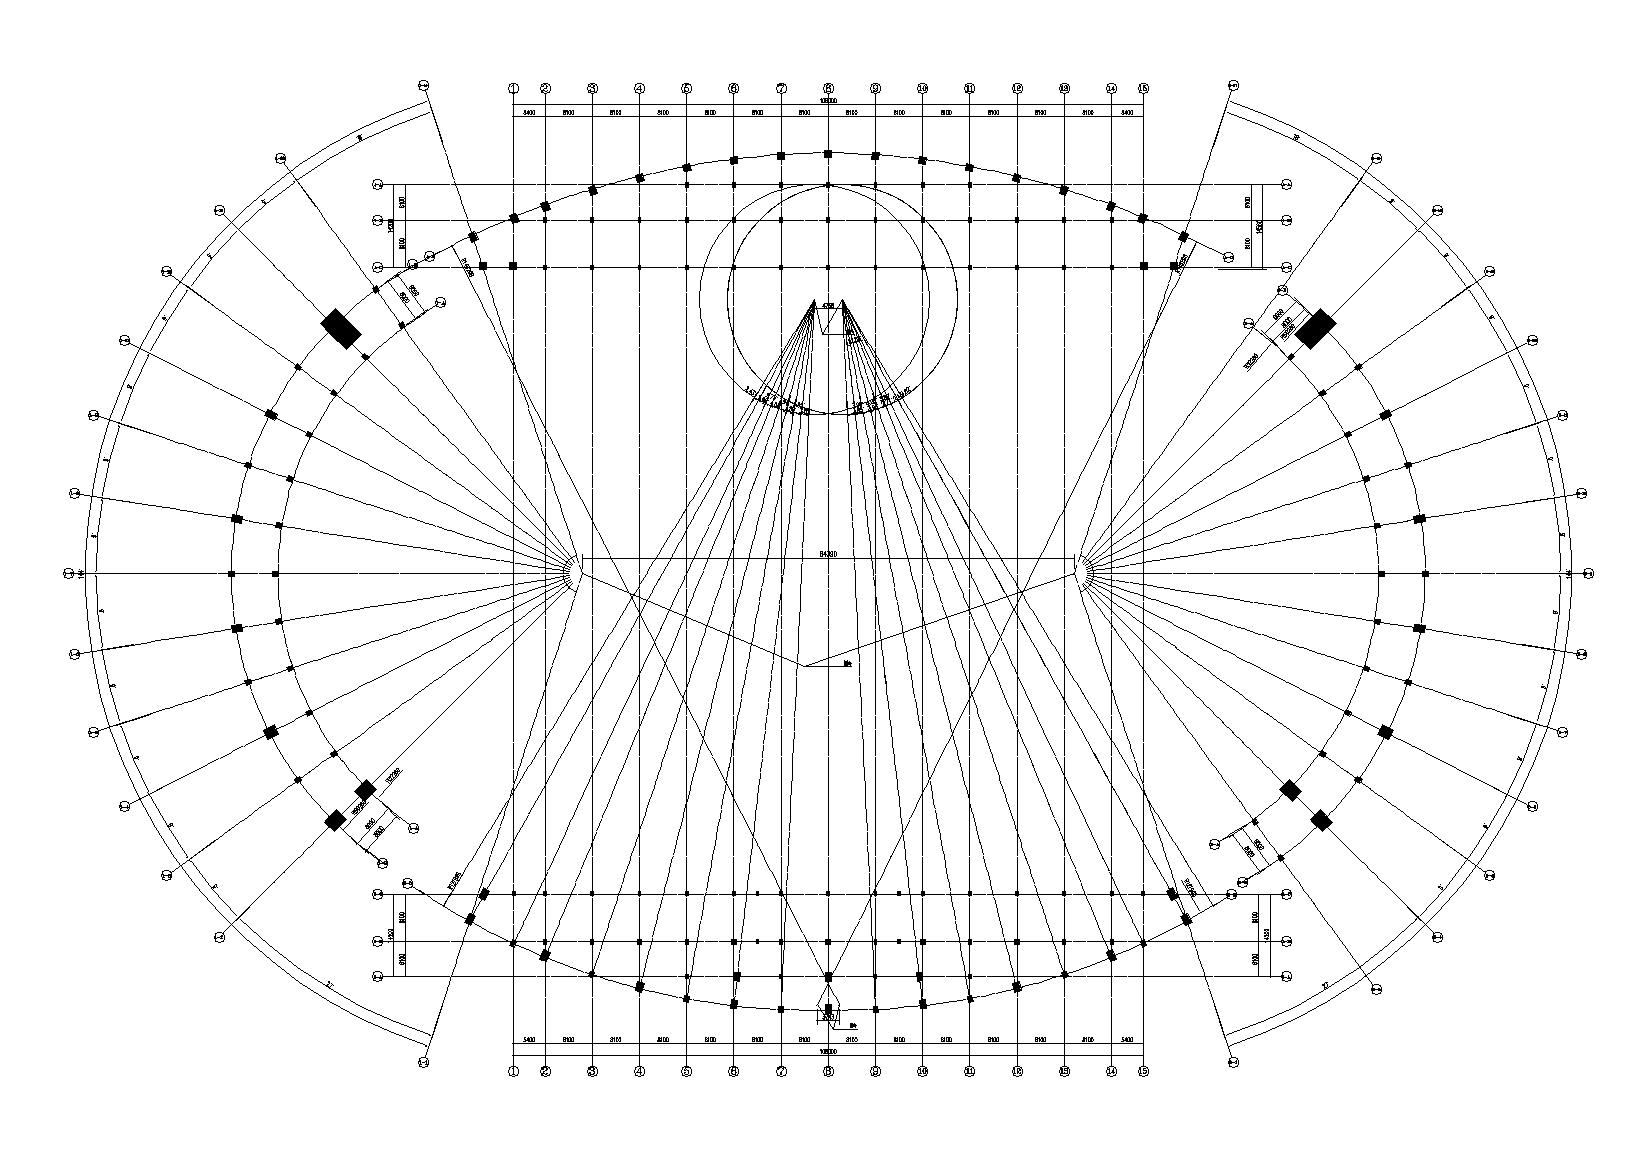 修文县体育场建筑设计施工图(含招标文件)-柱网定位图